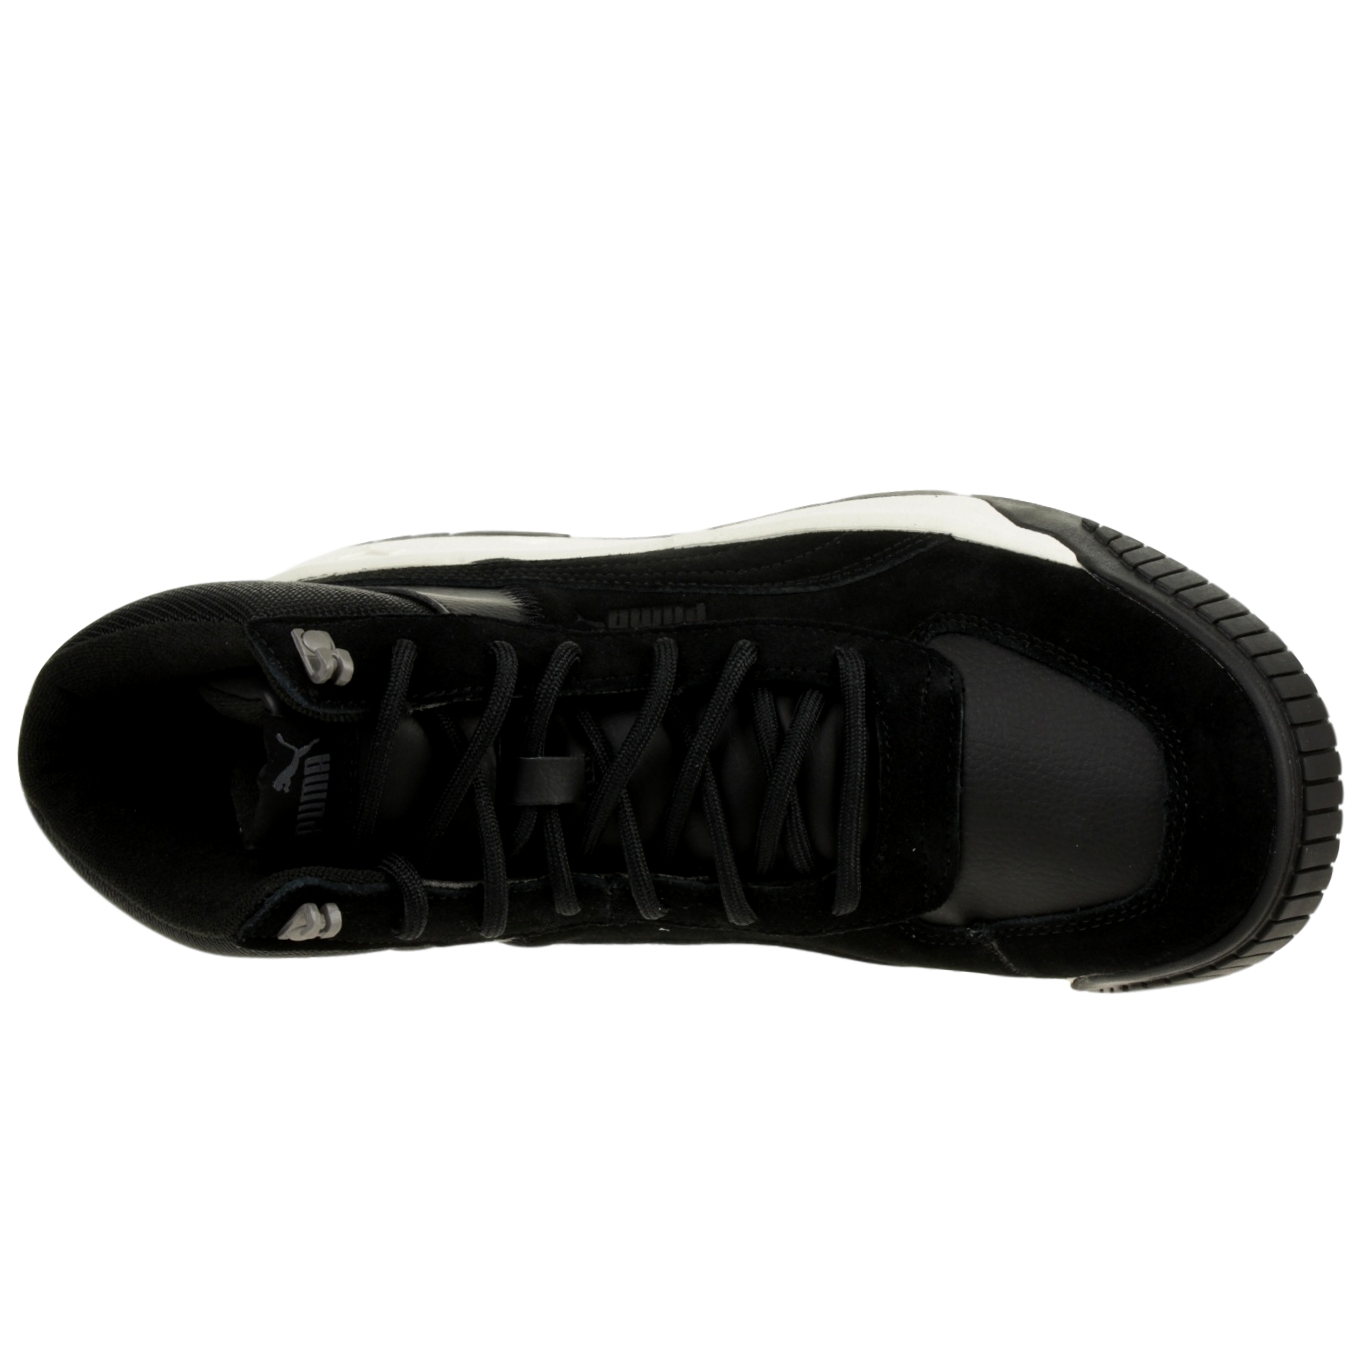 Puma Herren Tarrenz SB High-Top Sneaker Stiefel 370551  Schwarz